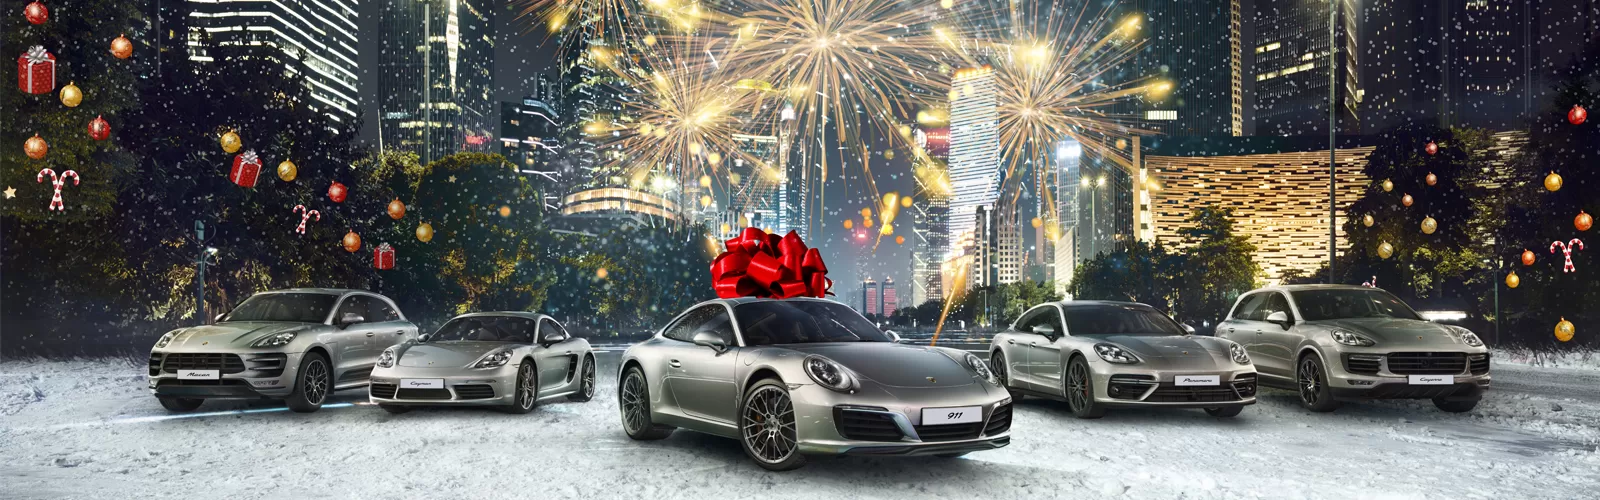 20 идеальных подарков от Спорткар-Центр.Автомобили Porsche на ошеломляющих условиях. 